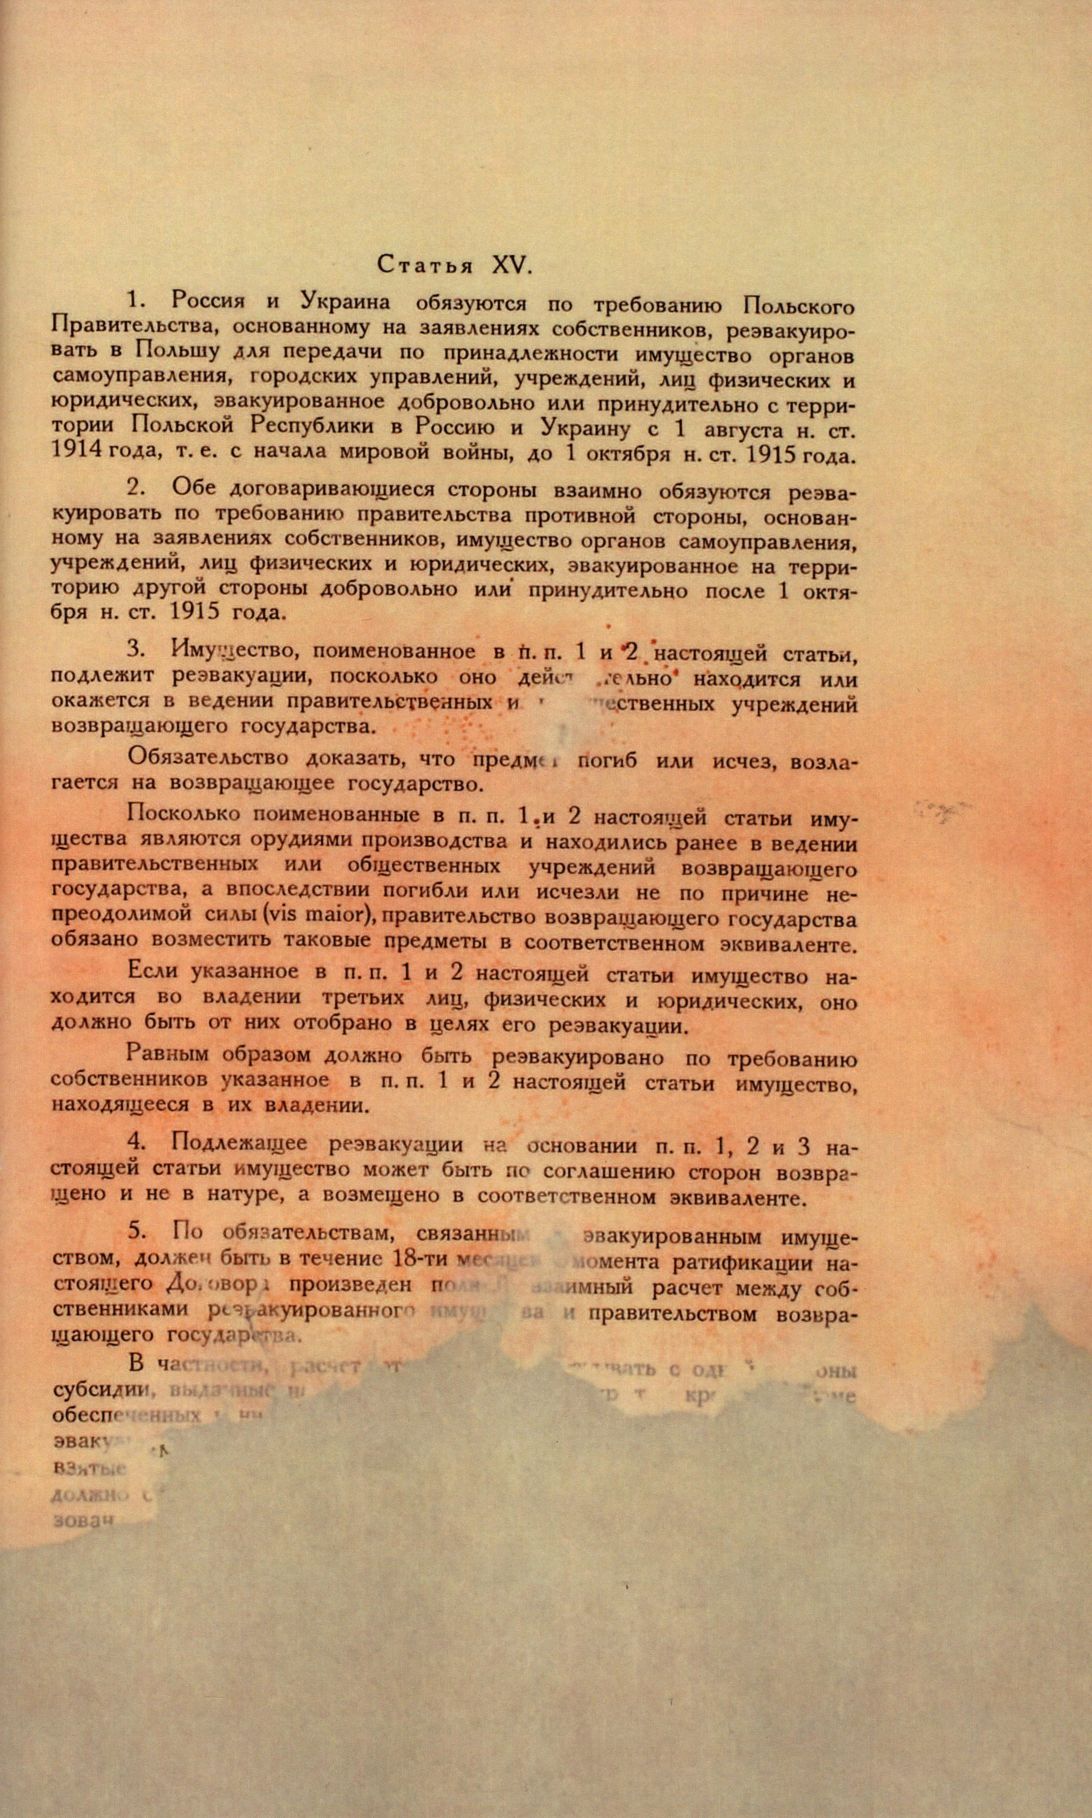 Traktat Pokoju między Polską a Rosją i Ukrainą podpisany w Rydze dnia 18 marca 1921 roku, s. 81, MSZ, sygn. 6739.